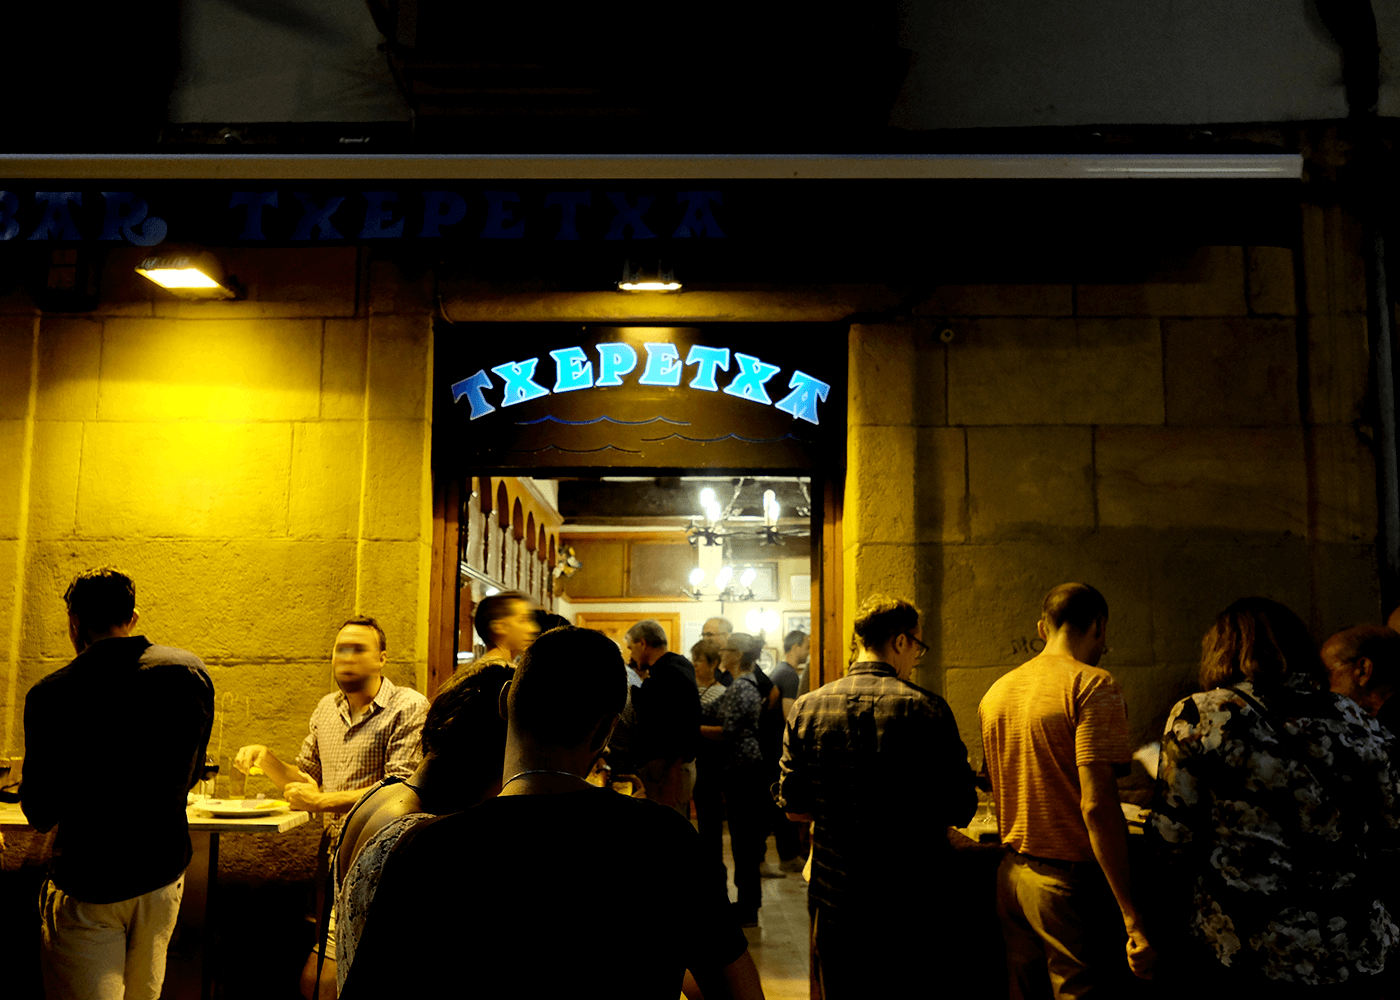 【バスク地方】Bar Txepetxa（バル チェペチャ）狭くても大人気！イワシの酢漬けがとても美味しい、旧市街地のバル@San Sebastian, Spain